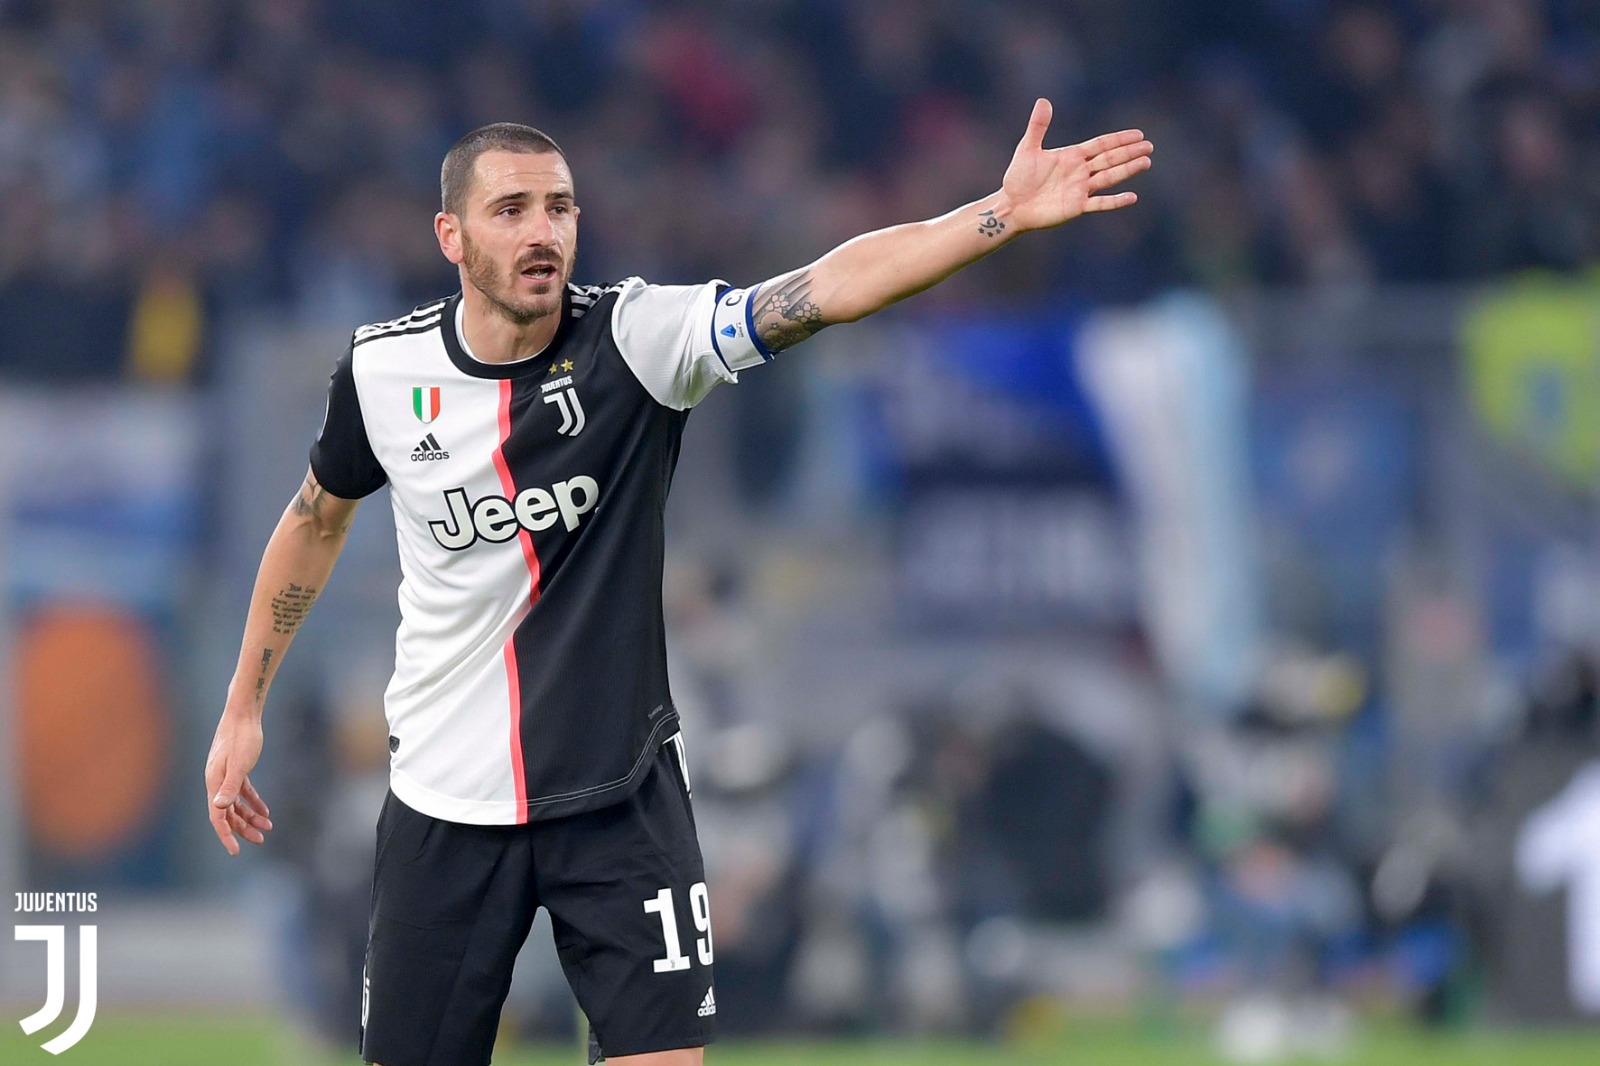 La Juventus vince il derby (2-1) nel finale dopo oltre un’ora di buio alla Pirlo